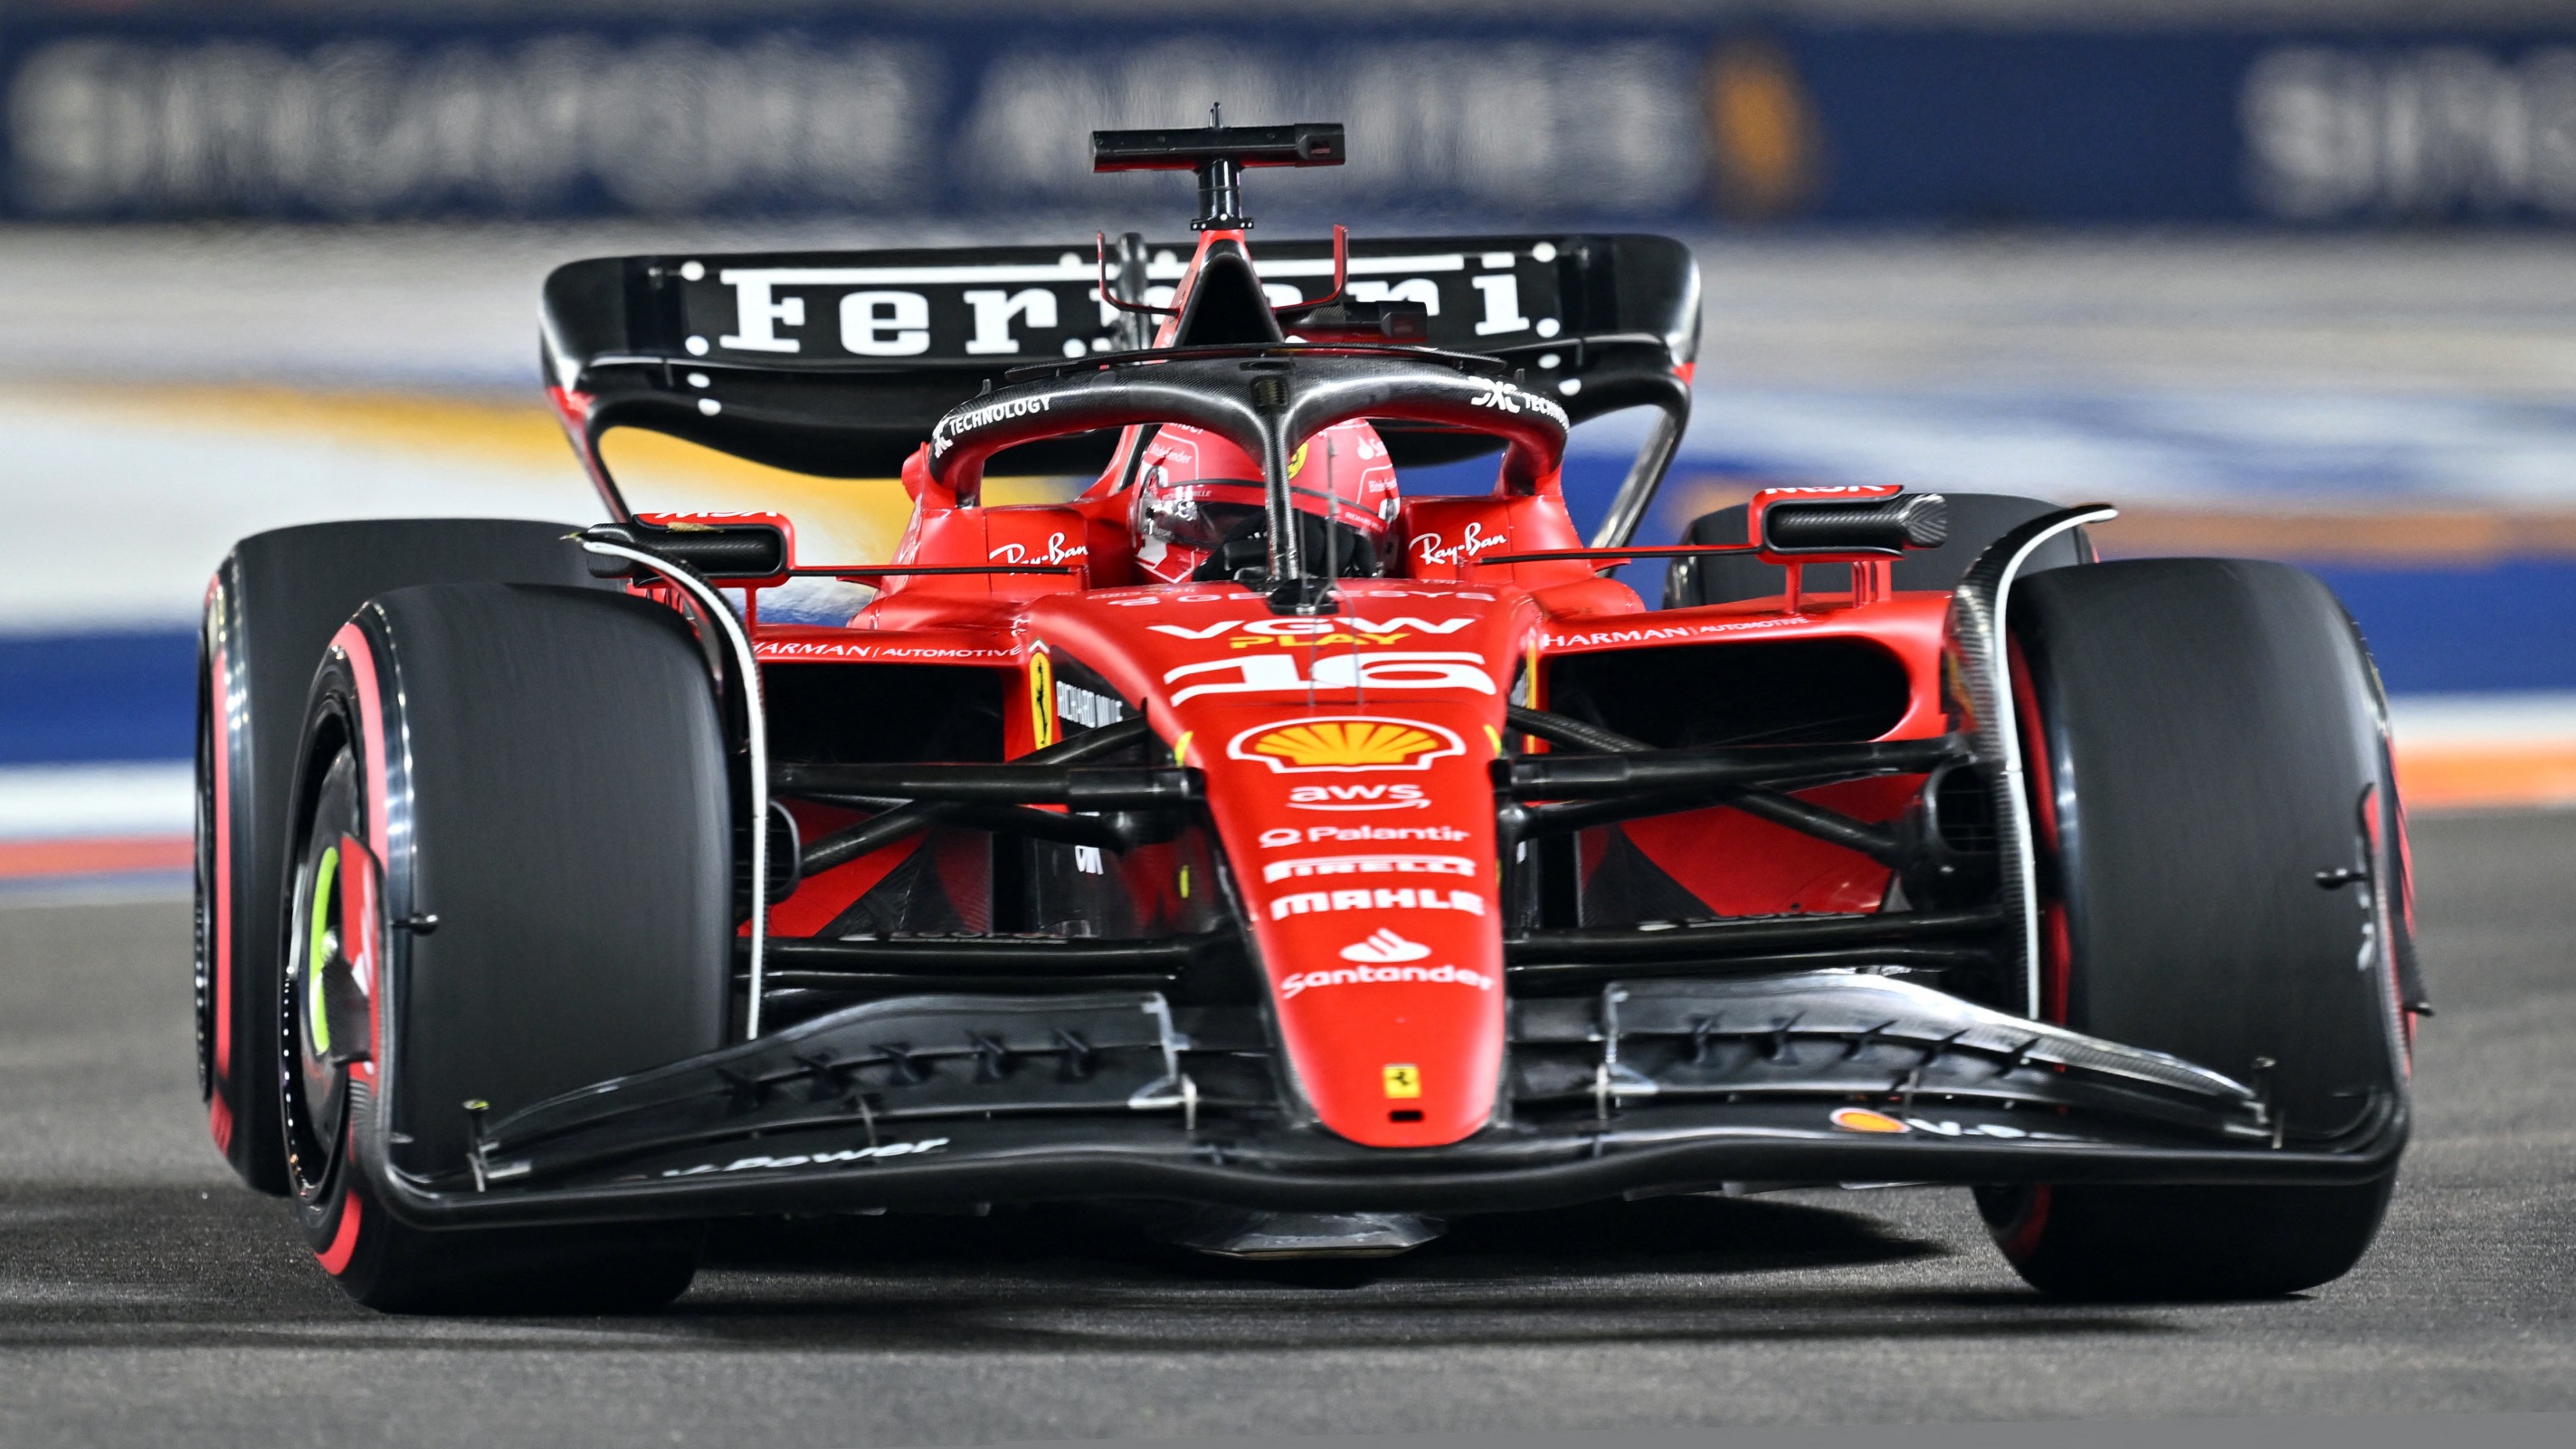 Formule 1: Ferrari avec des voitures de couleur bordeaux pour son 1000e  Grand Prix - Le Soir